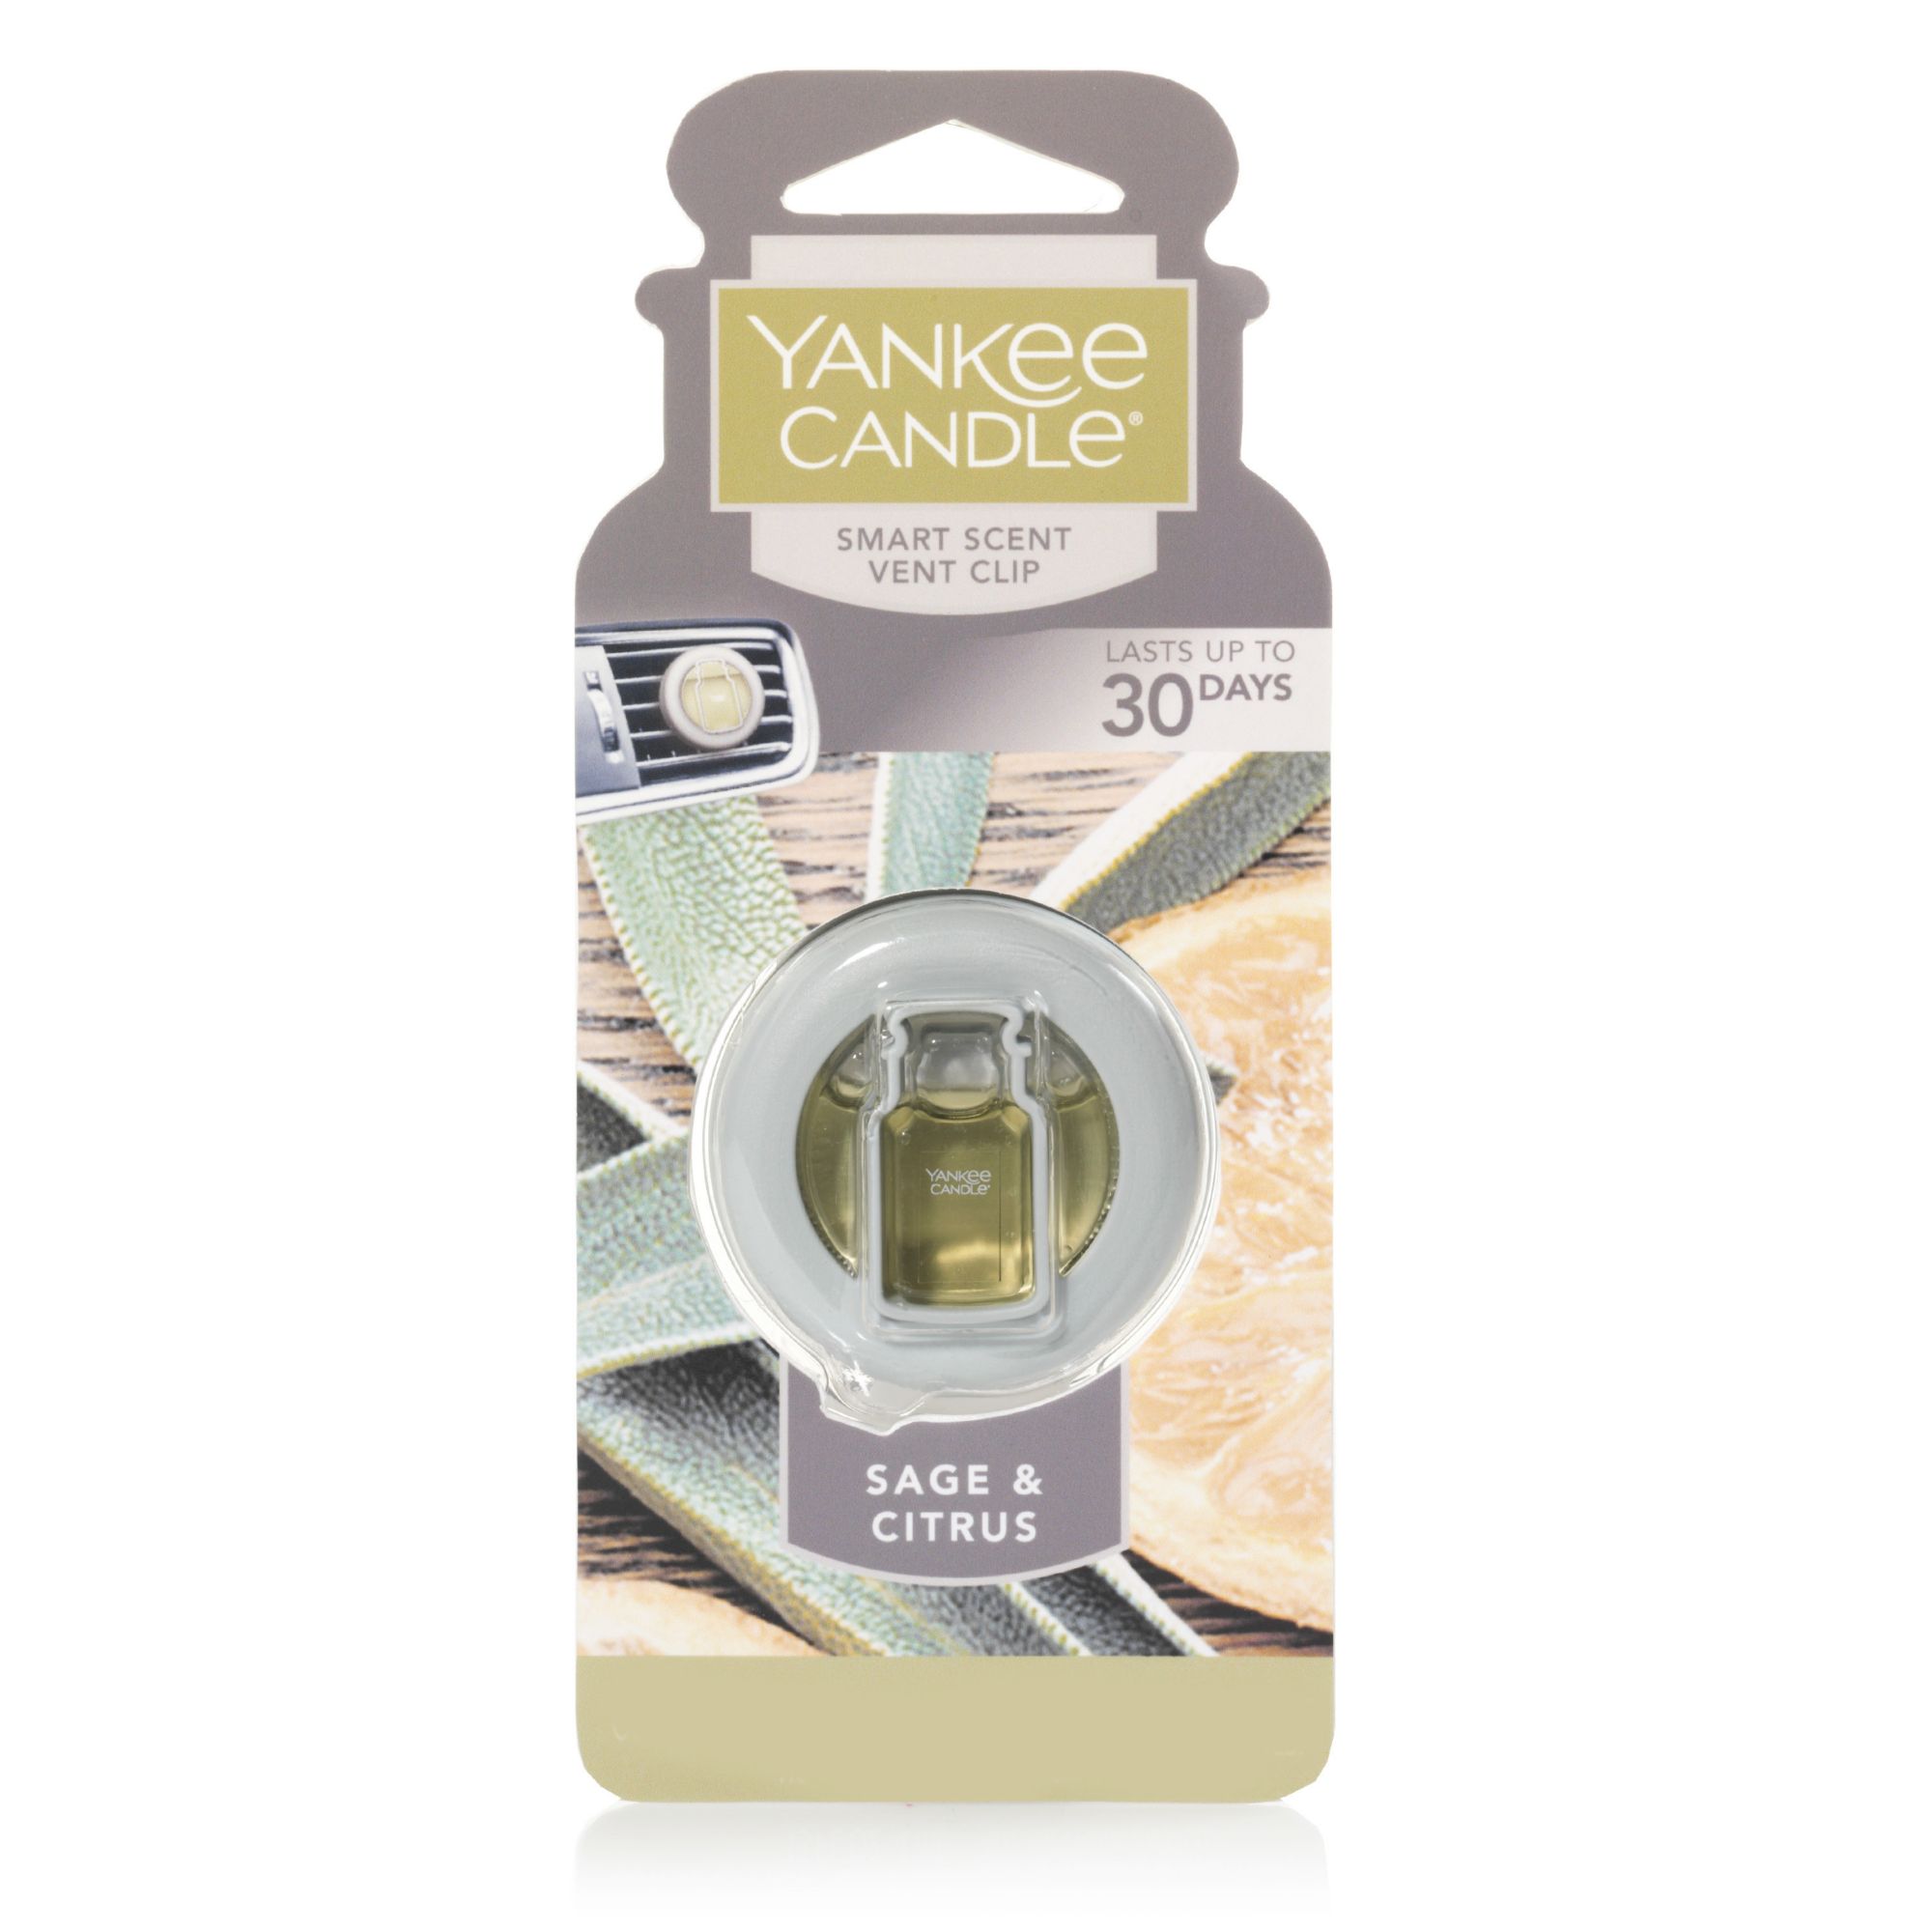 Yankee Candle Smart Scent Vent Clip - Sage & Citrus